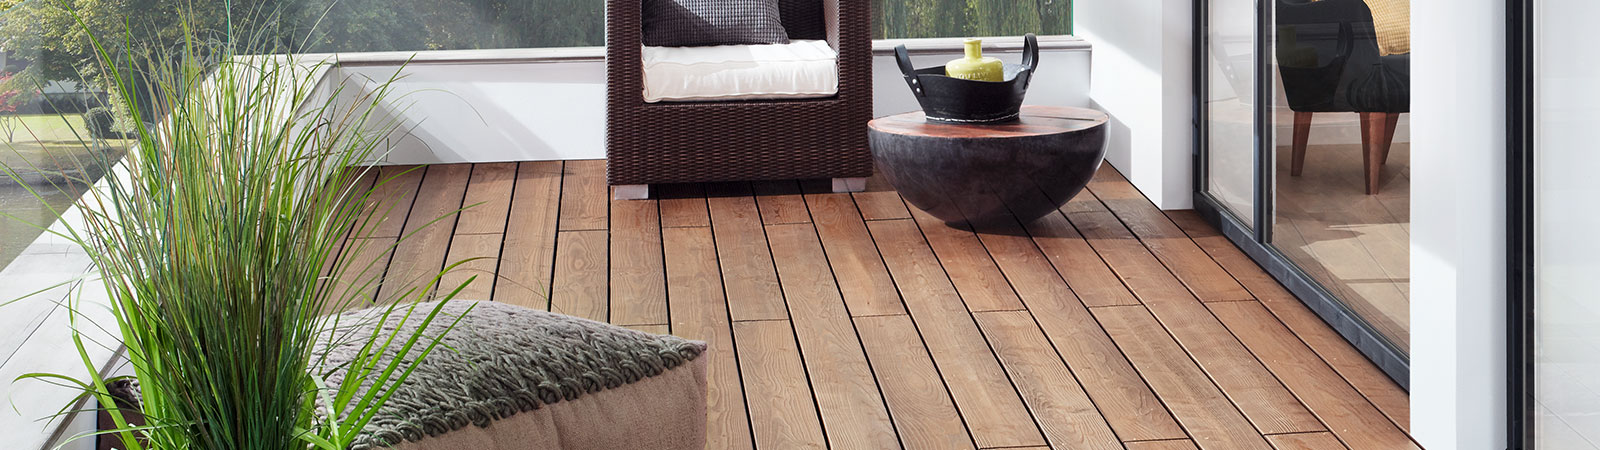 Osmo Farbe und Anstriche für die Holzterrasse im Außenbereich - Pflege- und Reinigungsprodukte